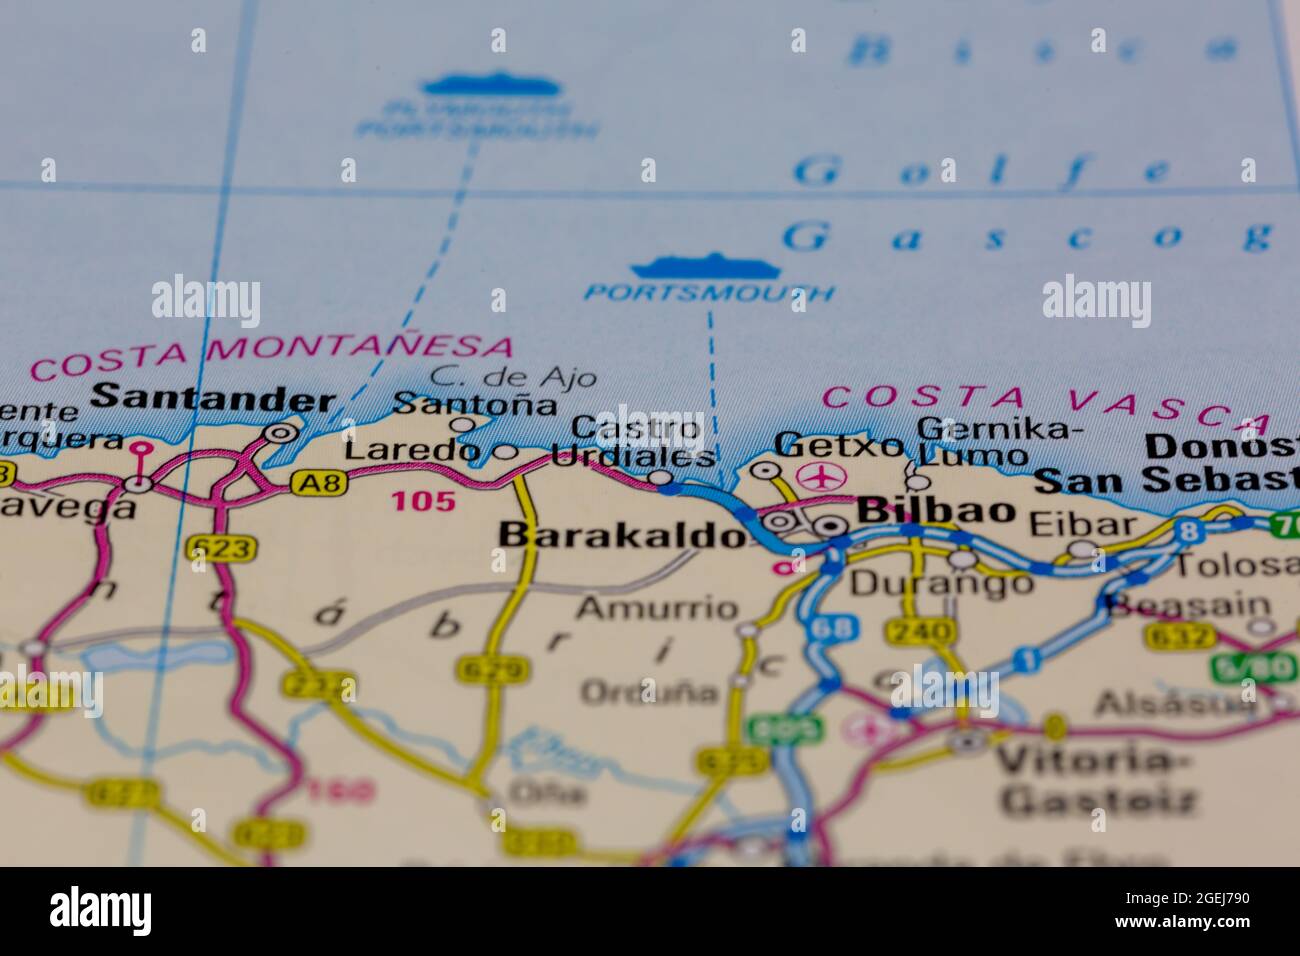 Castro Urdiales Espagne indiqué sur une carte routière ou une carte de la géographie Banque D'Images